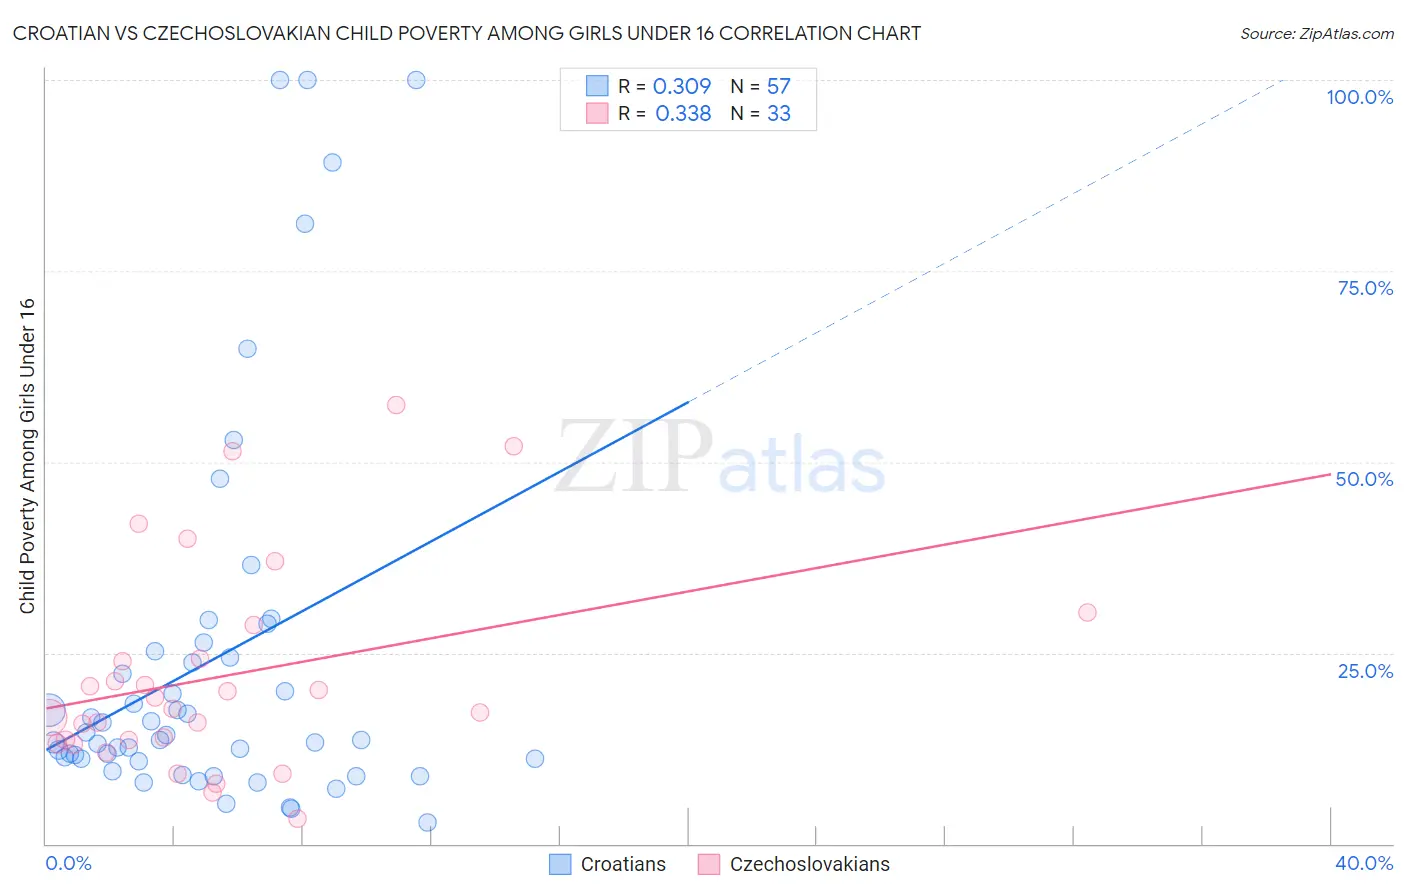 Croatian vs Czechoslovakian Child Poverty Among Girls Under 16